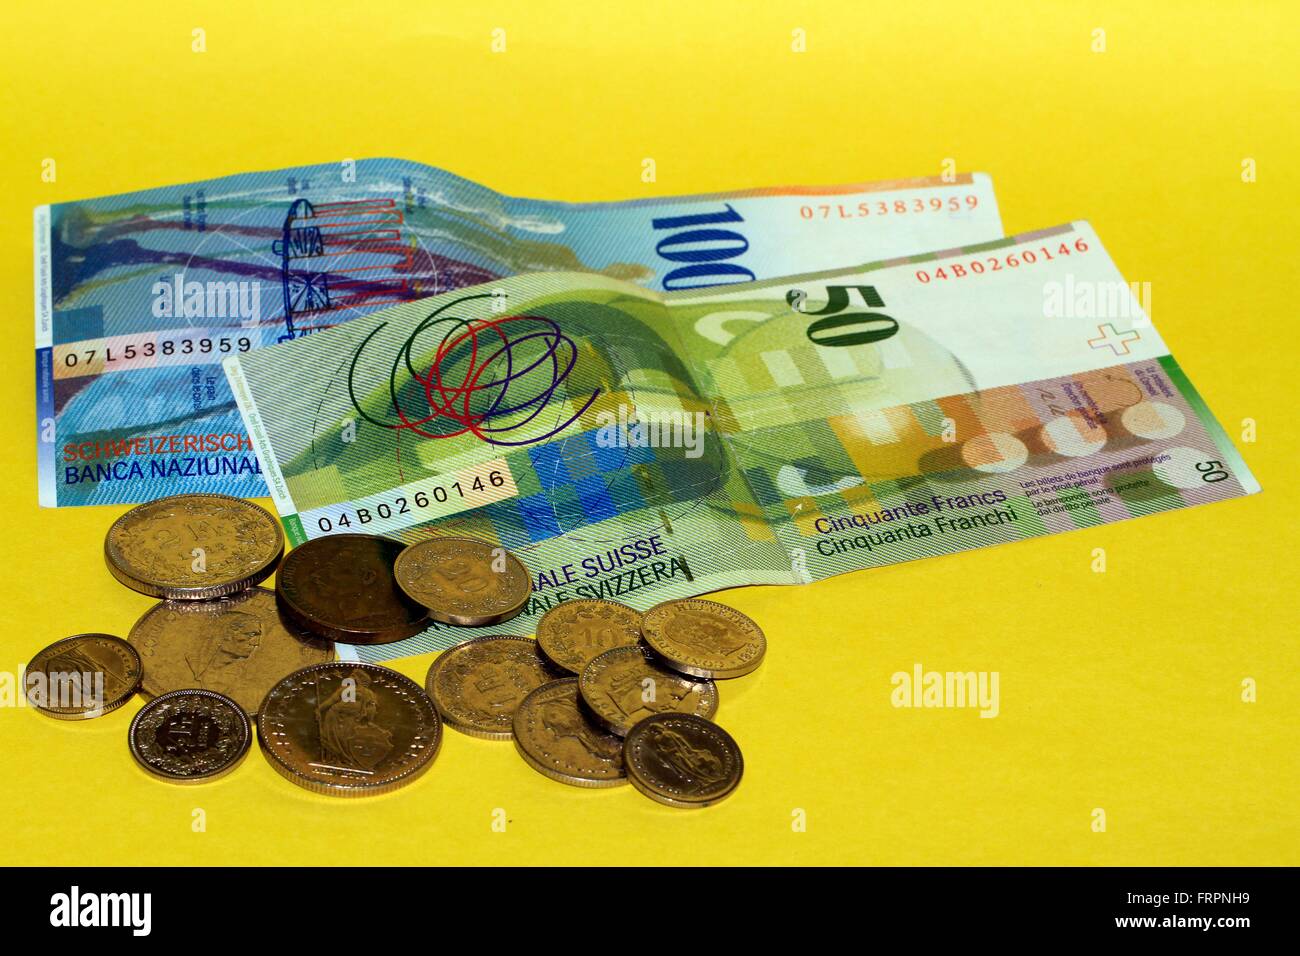 Le franc suisse est la devise de la Suisse et du Liechtenstein. Il est divisé en 100 centimes. Son abréviation ISO CHF, le symbole de devise est Fr. Pour les montants centimes est l'abréviation Rp. La Suisse, l'Europe Date : 19 mars 2016 Date : 19 mars 20 Banque D'Images